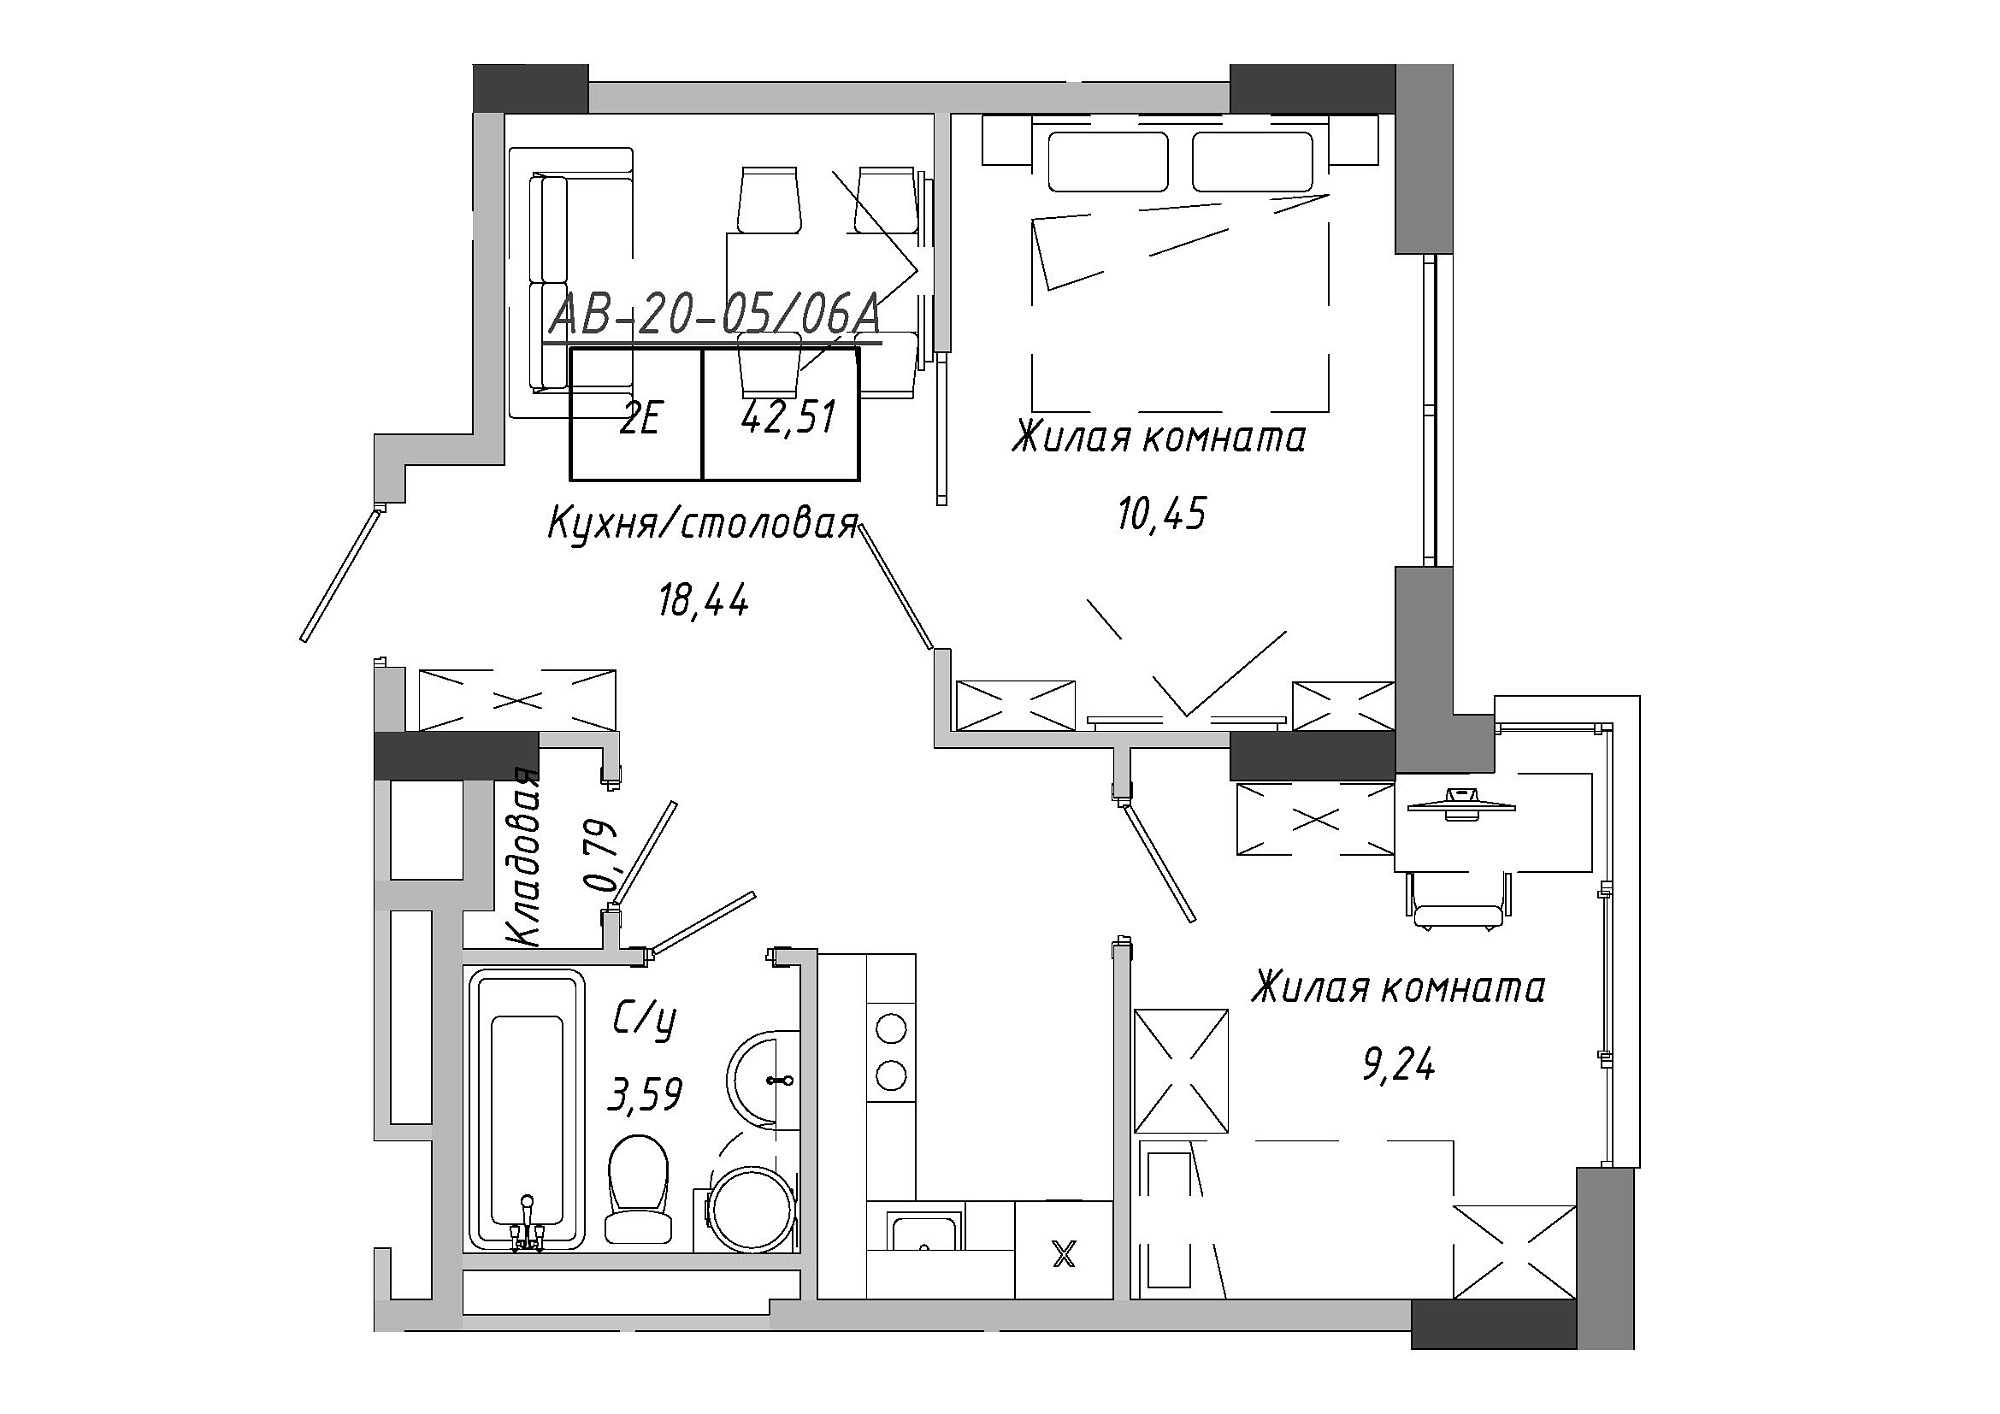 Планування 2-к квартира площею 42.85м2, AB-20-05/0006а.